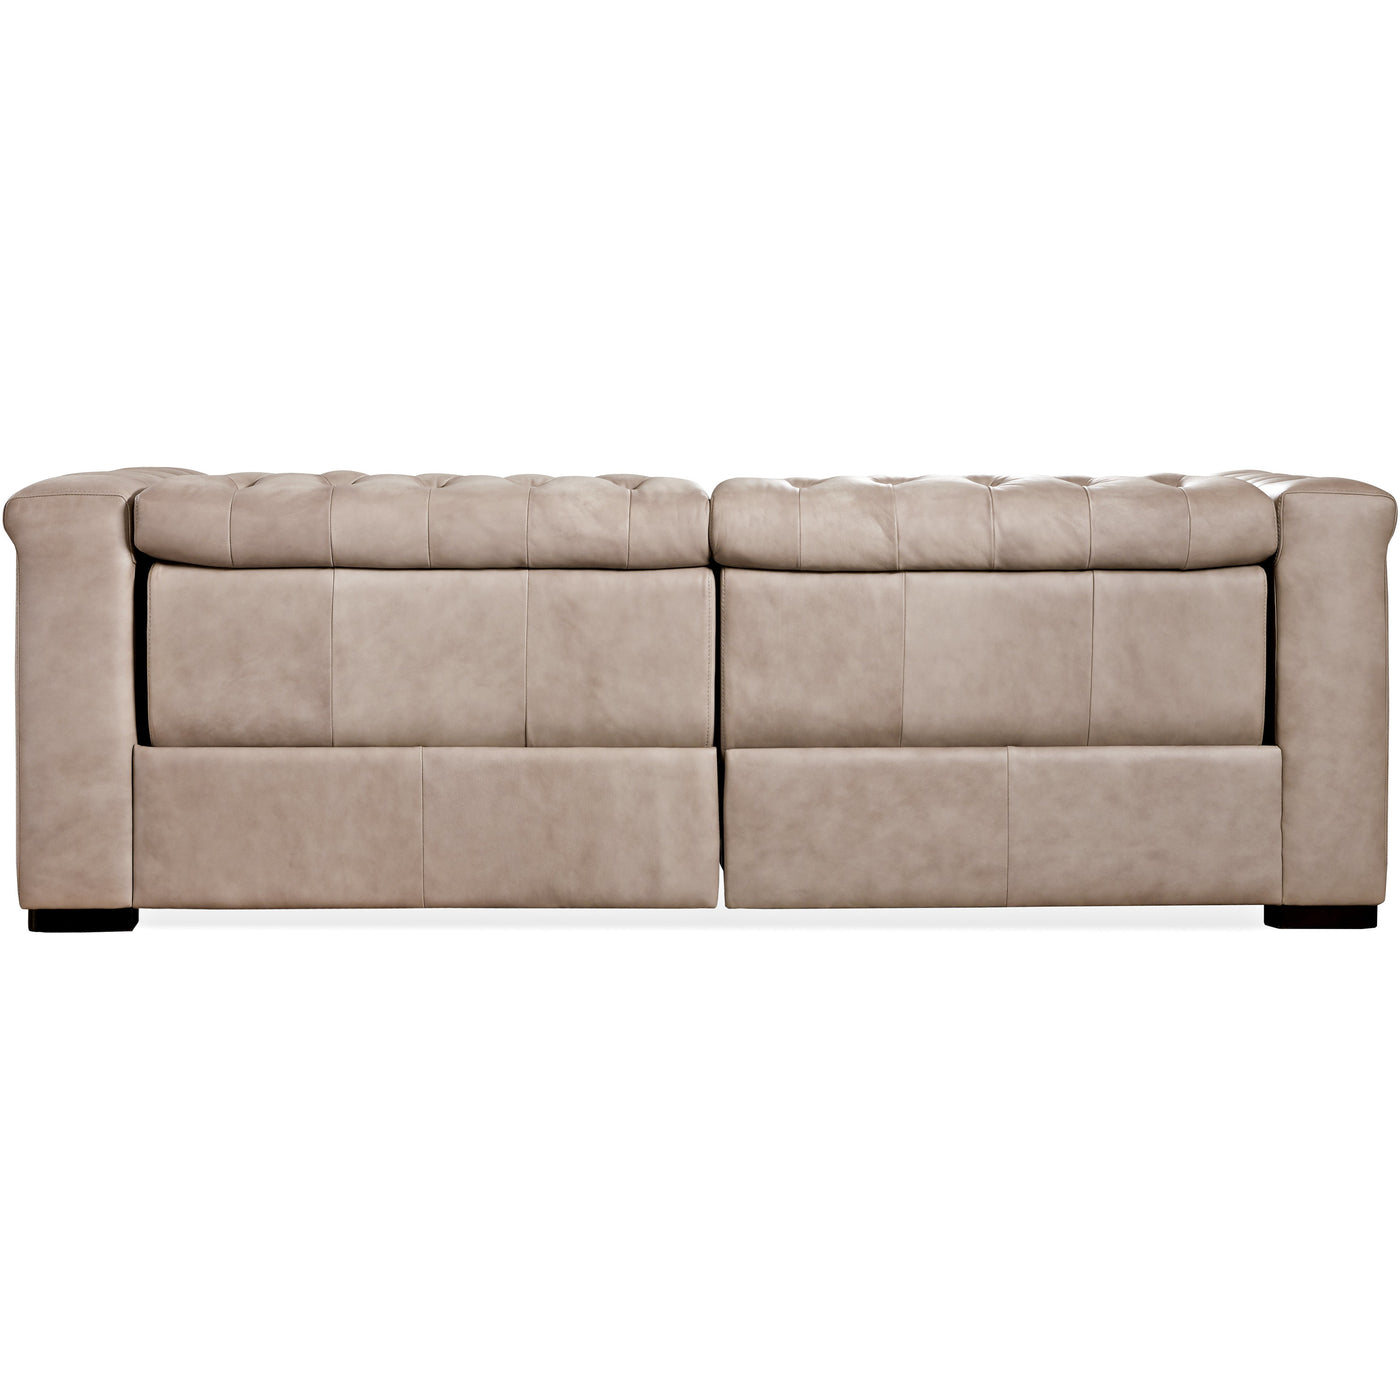 Savion Sofa 